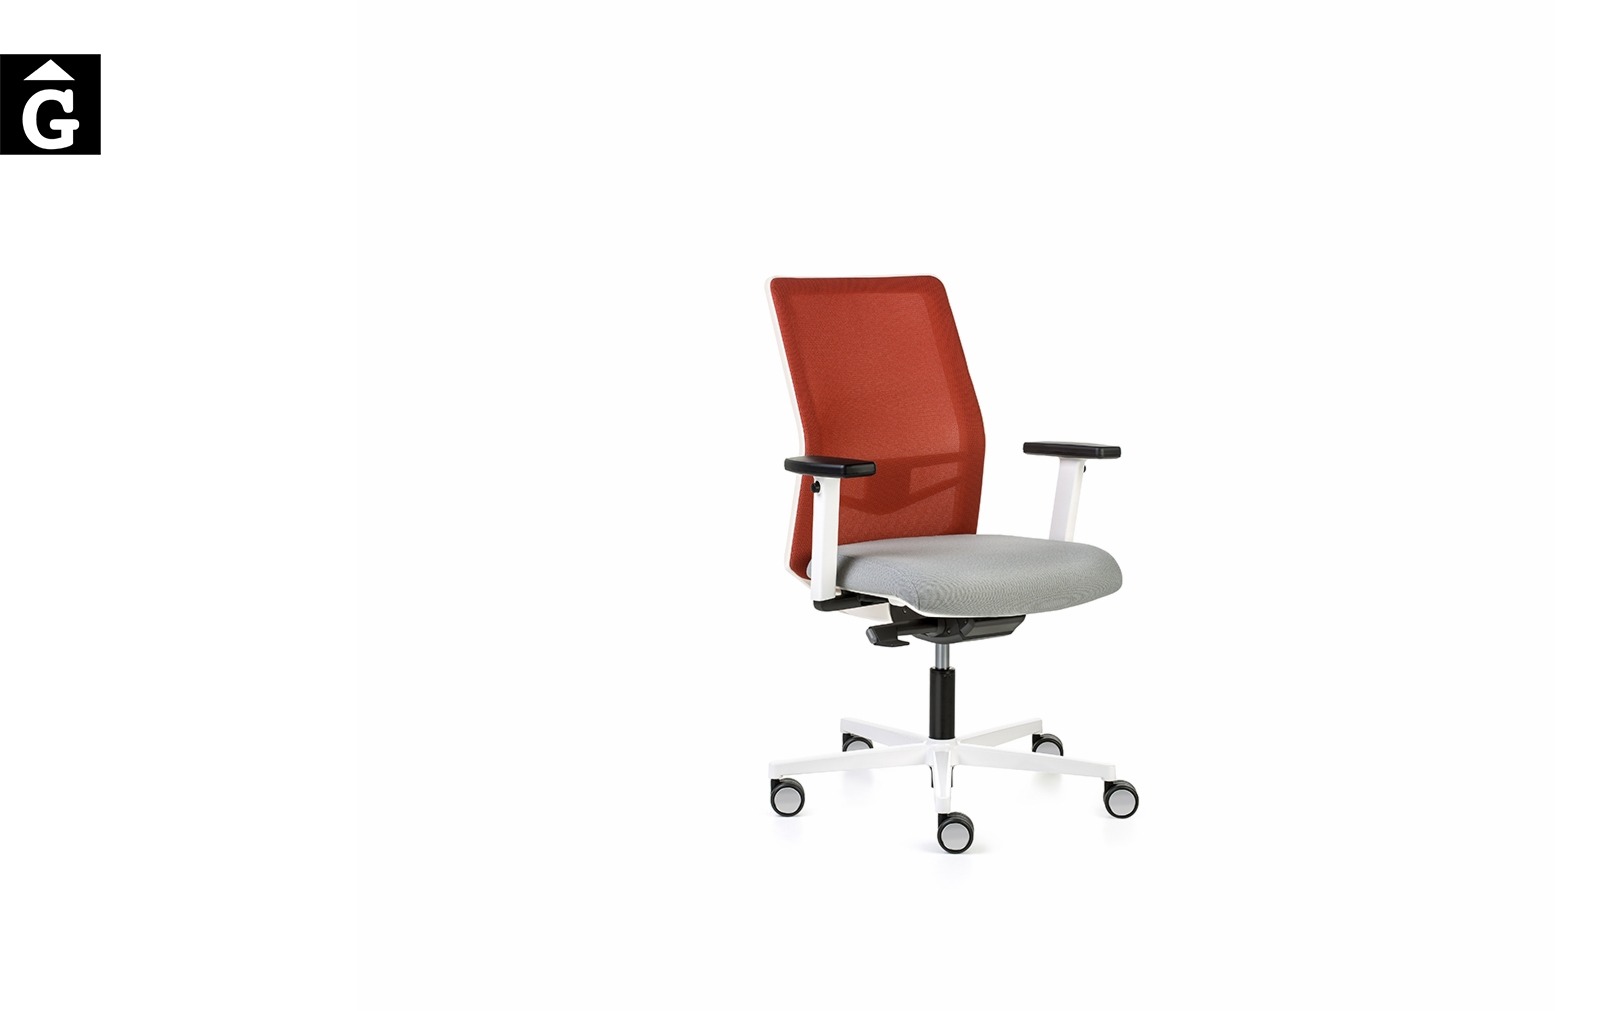 Cadira despatx Equis Blanca | Vista perfil | Cadira operativa Dile | mobiliari d’oficina molt interessant | mobles Gifreu | botiga | Contract | Mobles nous oficina